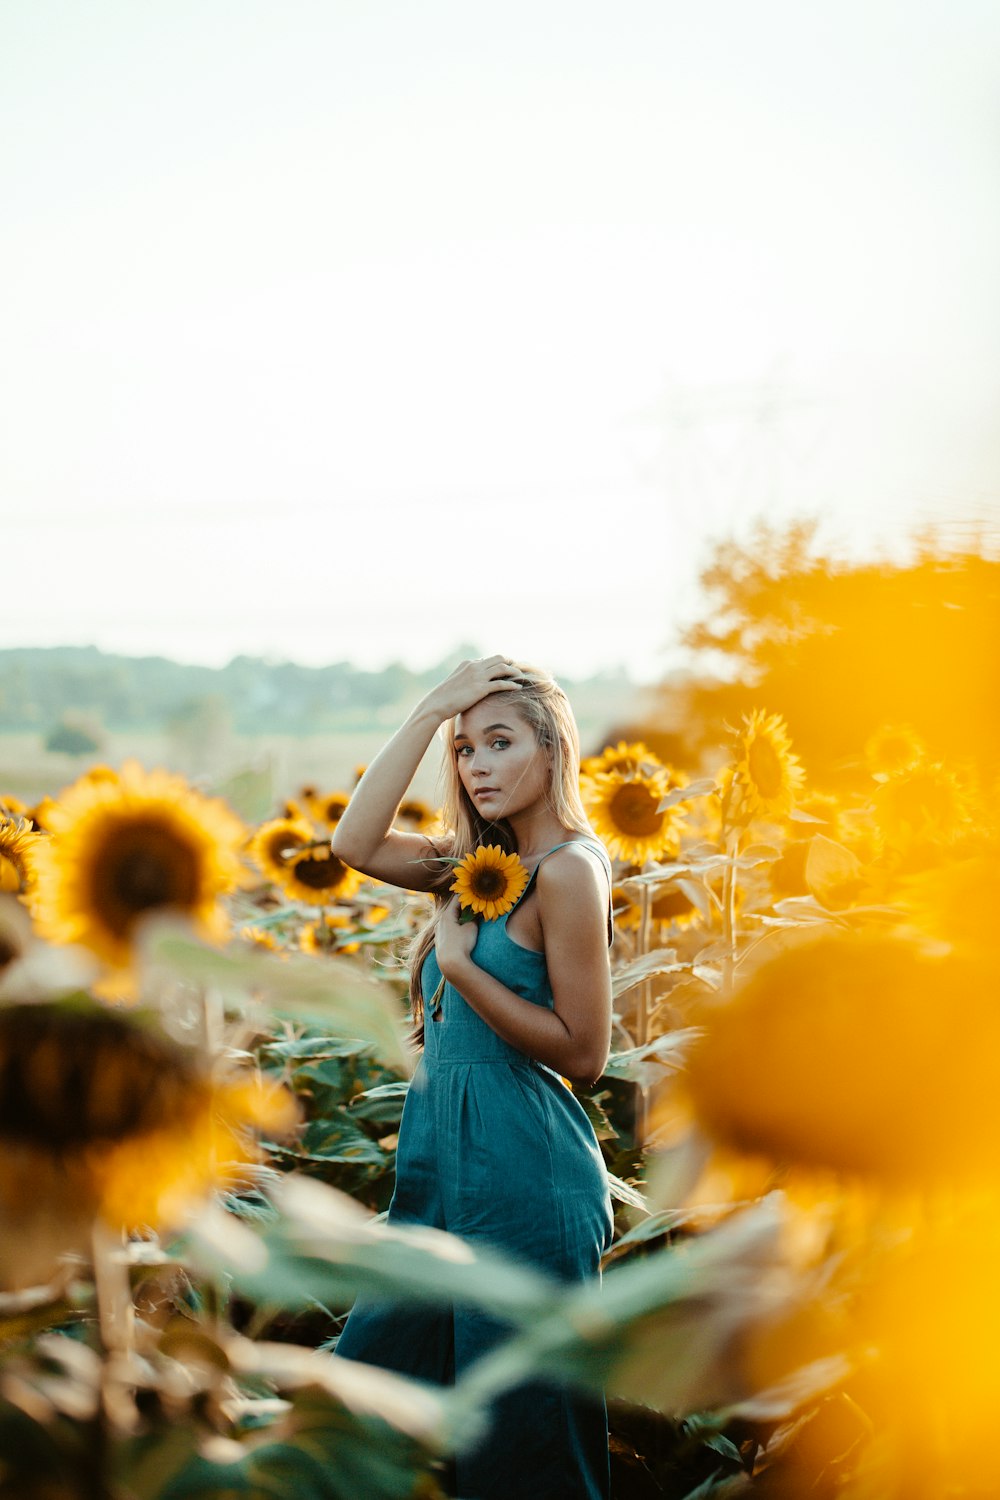 Photographie de mise au point peu profonde d’une femme tenant un tournesol jaune